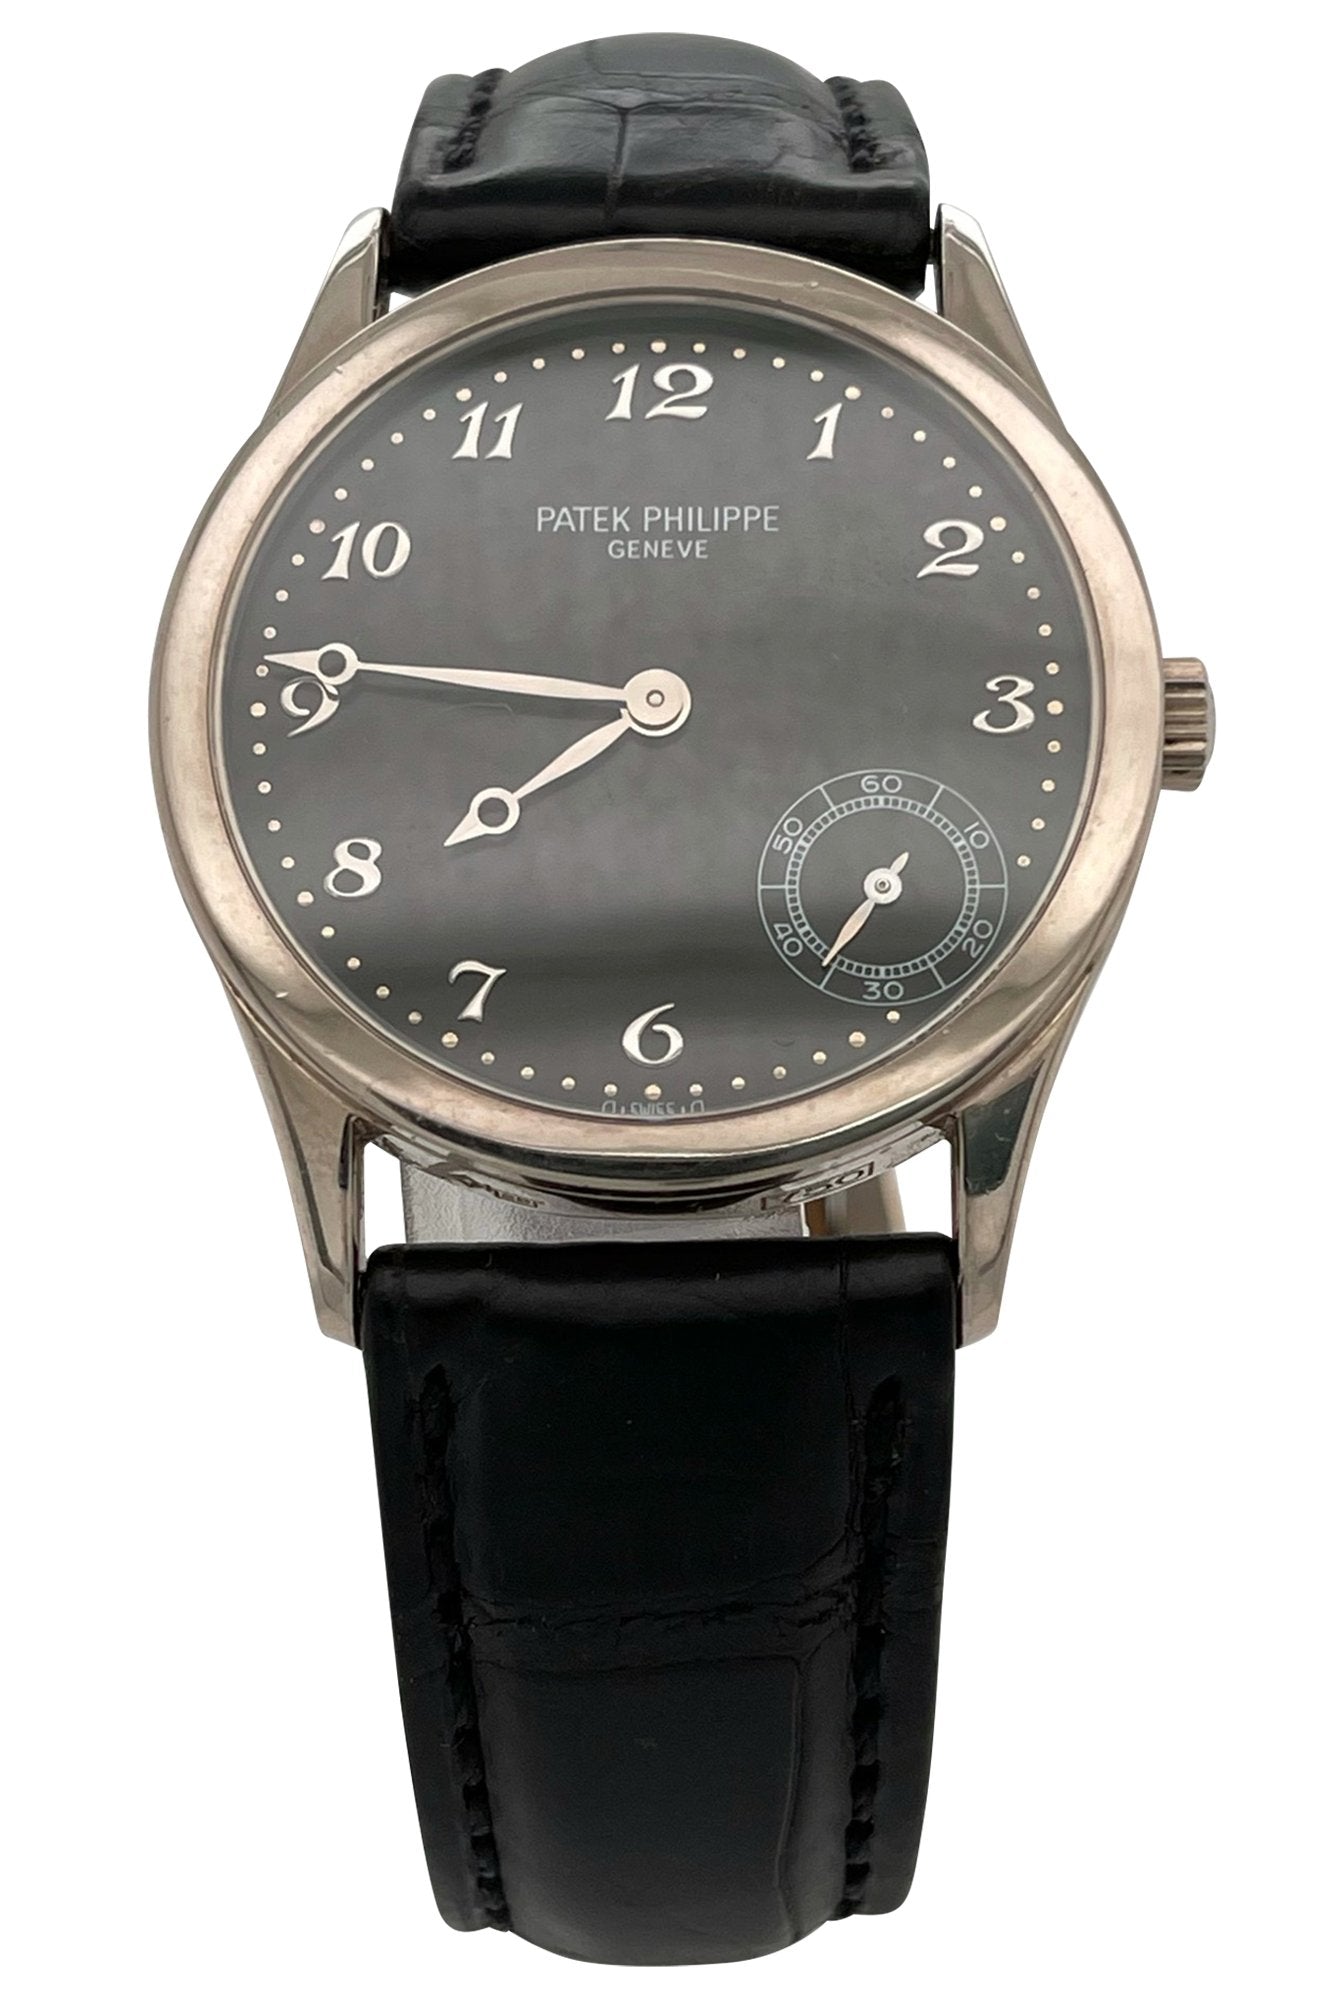 Patek Philippe Calatravas 5026G - Rare! - Counting Time Watch Purveyors